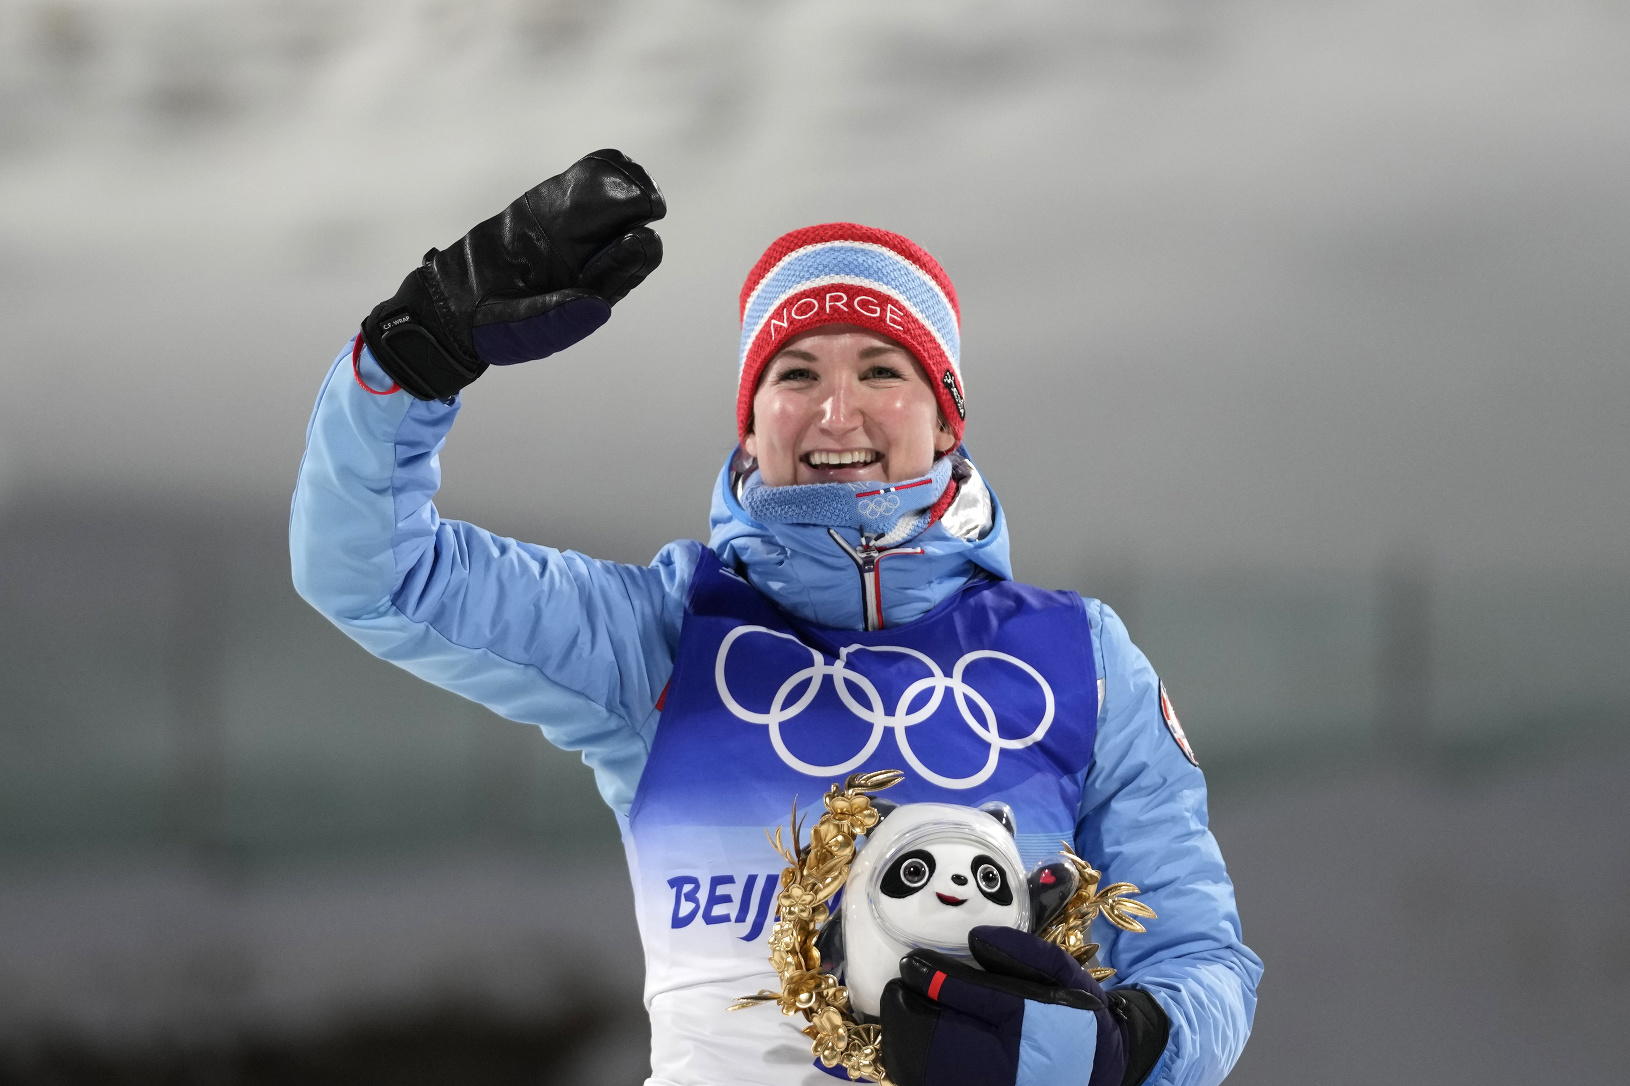 Nórska biatlonistka Marte Olsbuová-Röiselandová